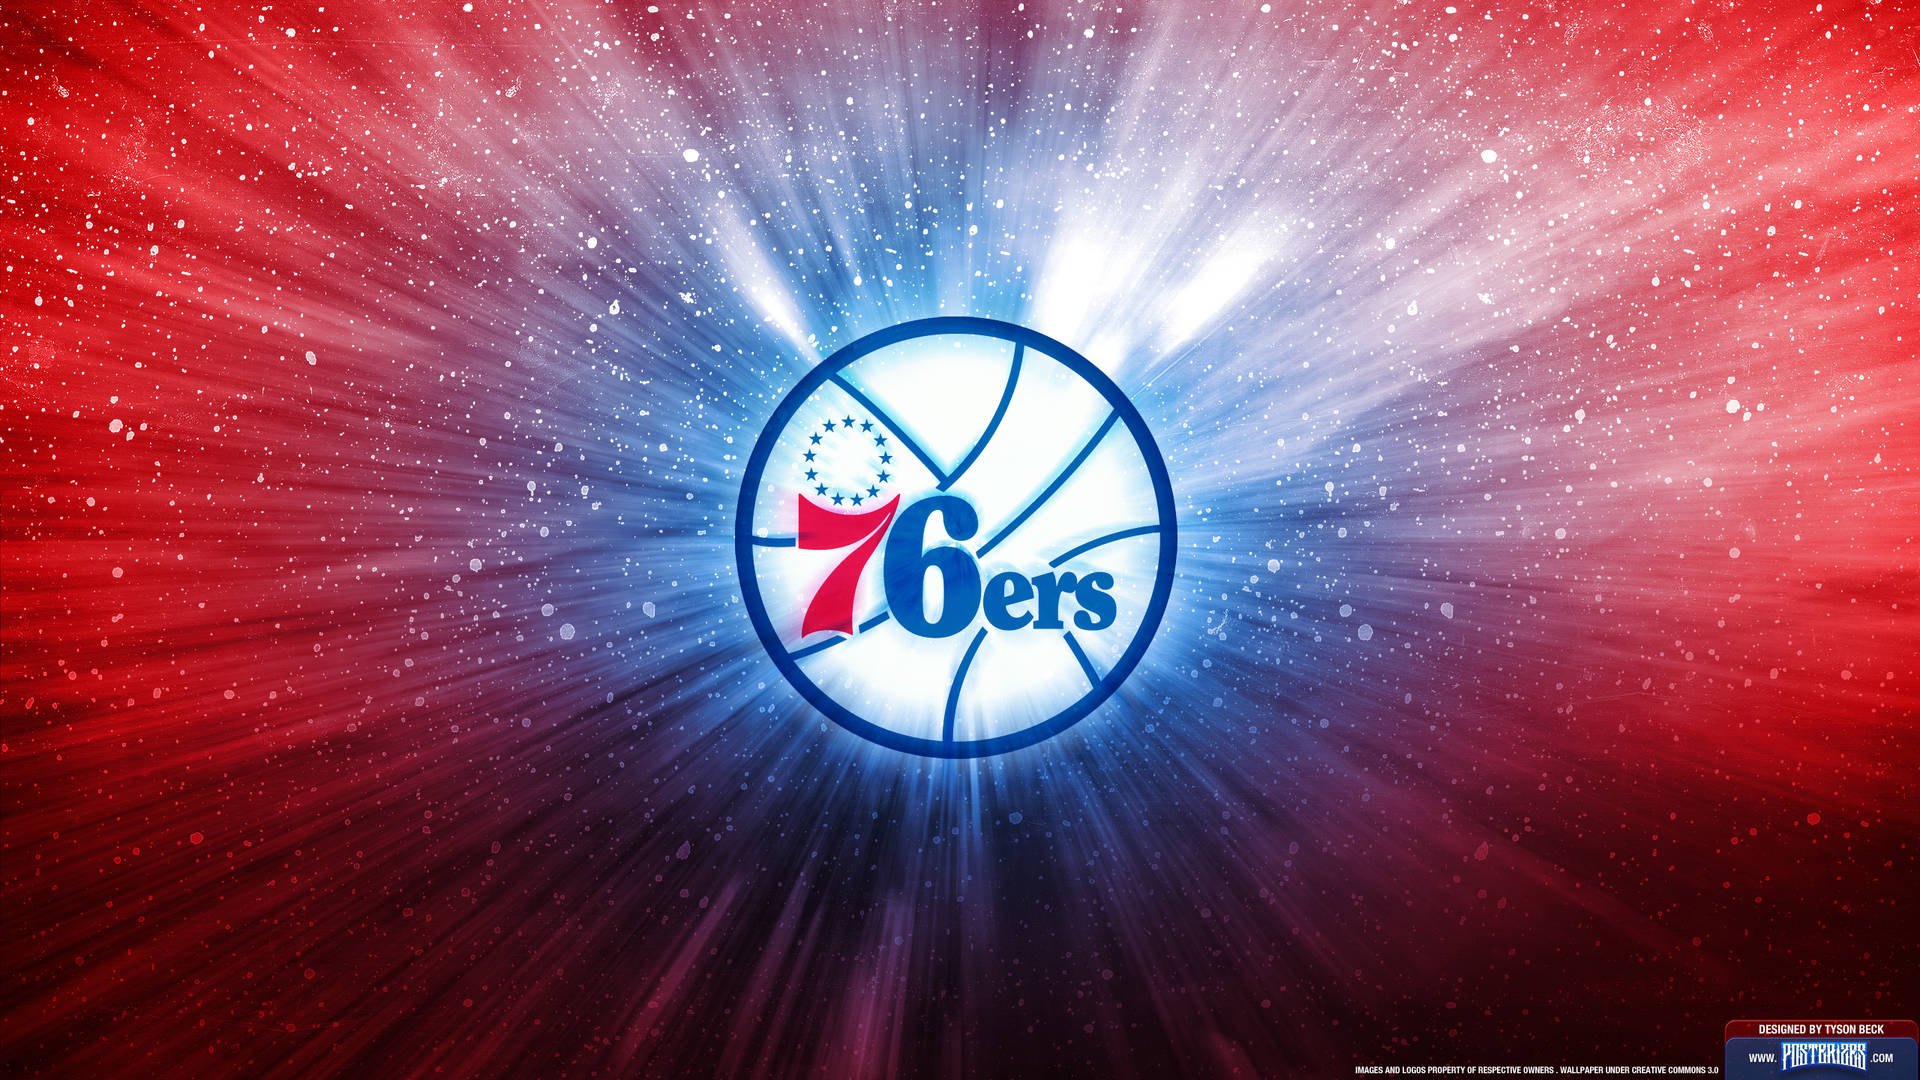 Philadelphia 76ers Basketball Team Wallpaper